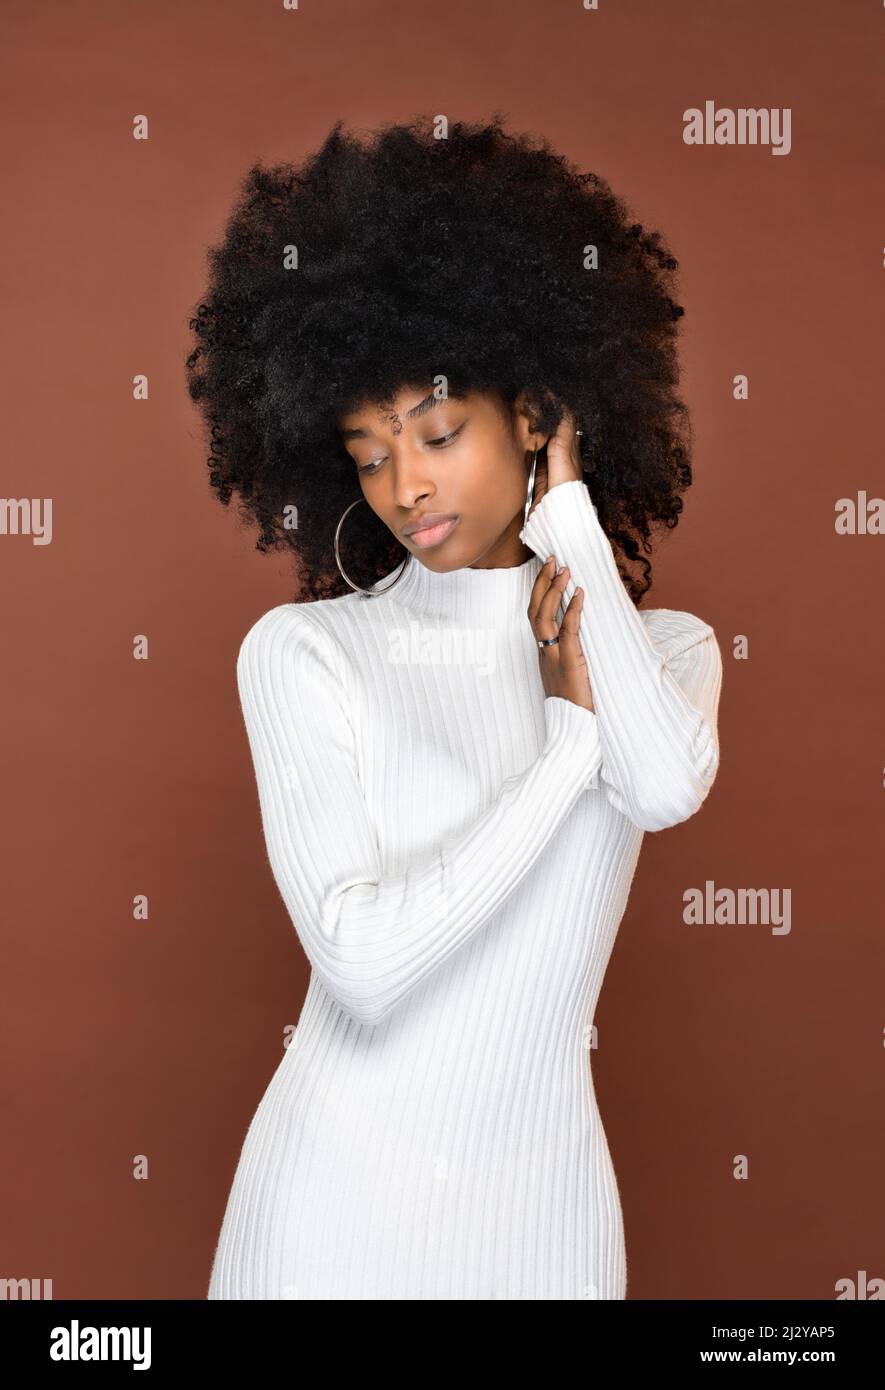 Slender calma signora dominicana con acconciatura Afro in abito bianco che tocca i capelli e guarda in giù su sfondo marrone Foto Stock